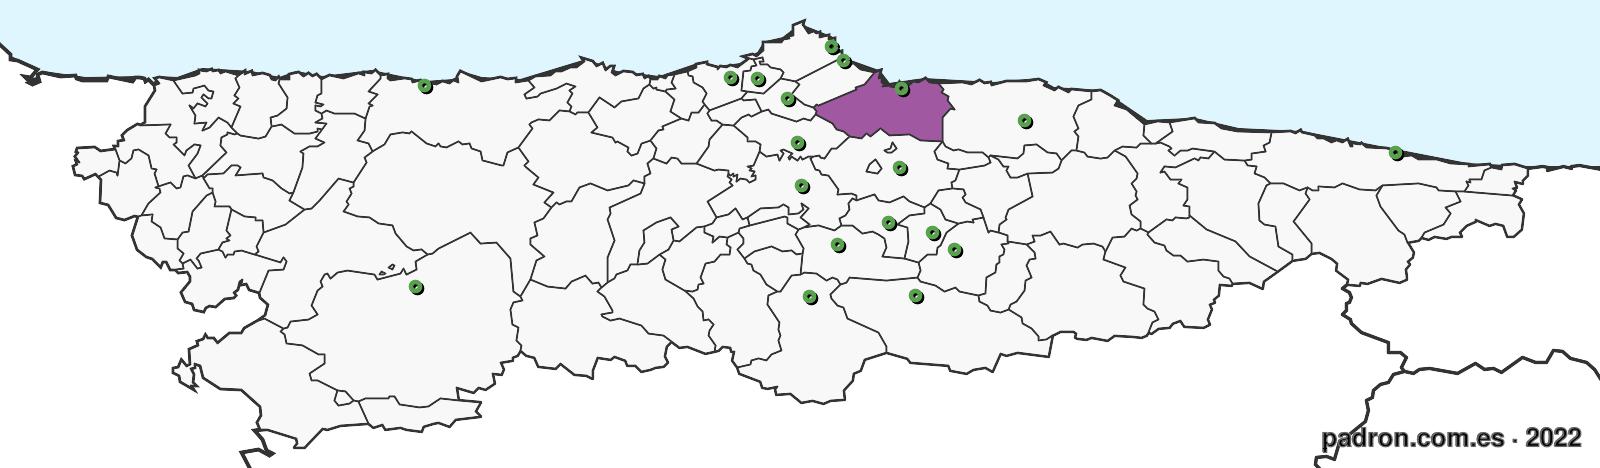 luxemburgueses en asturias.